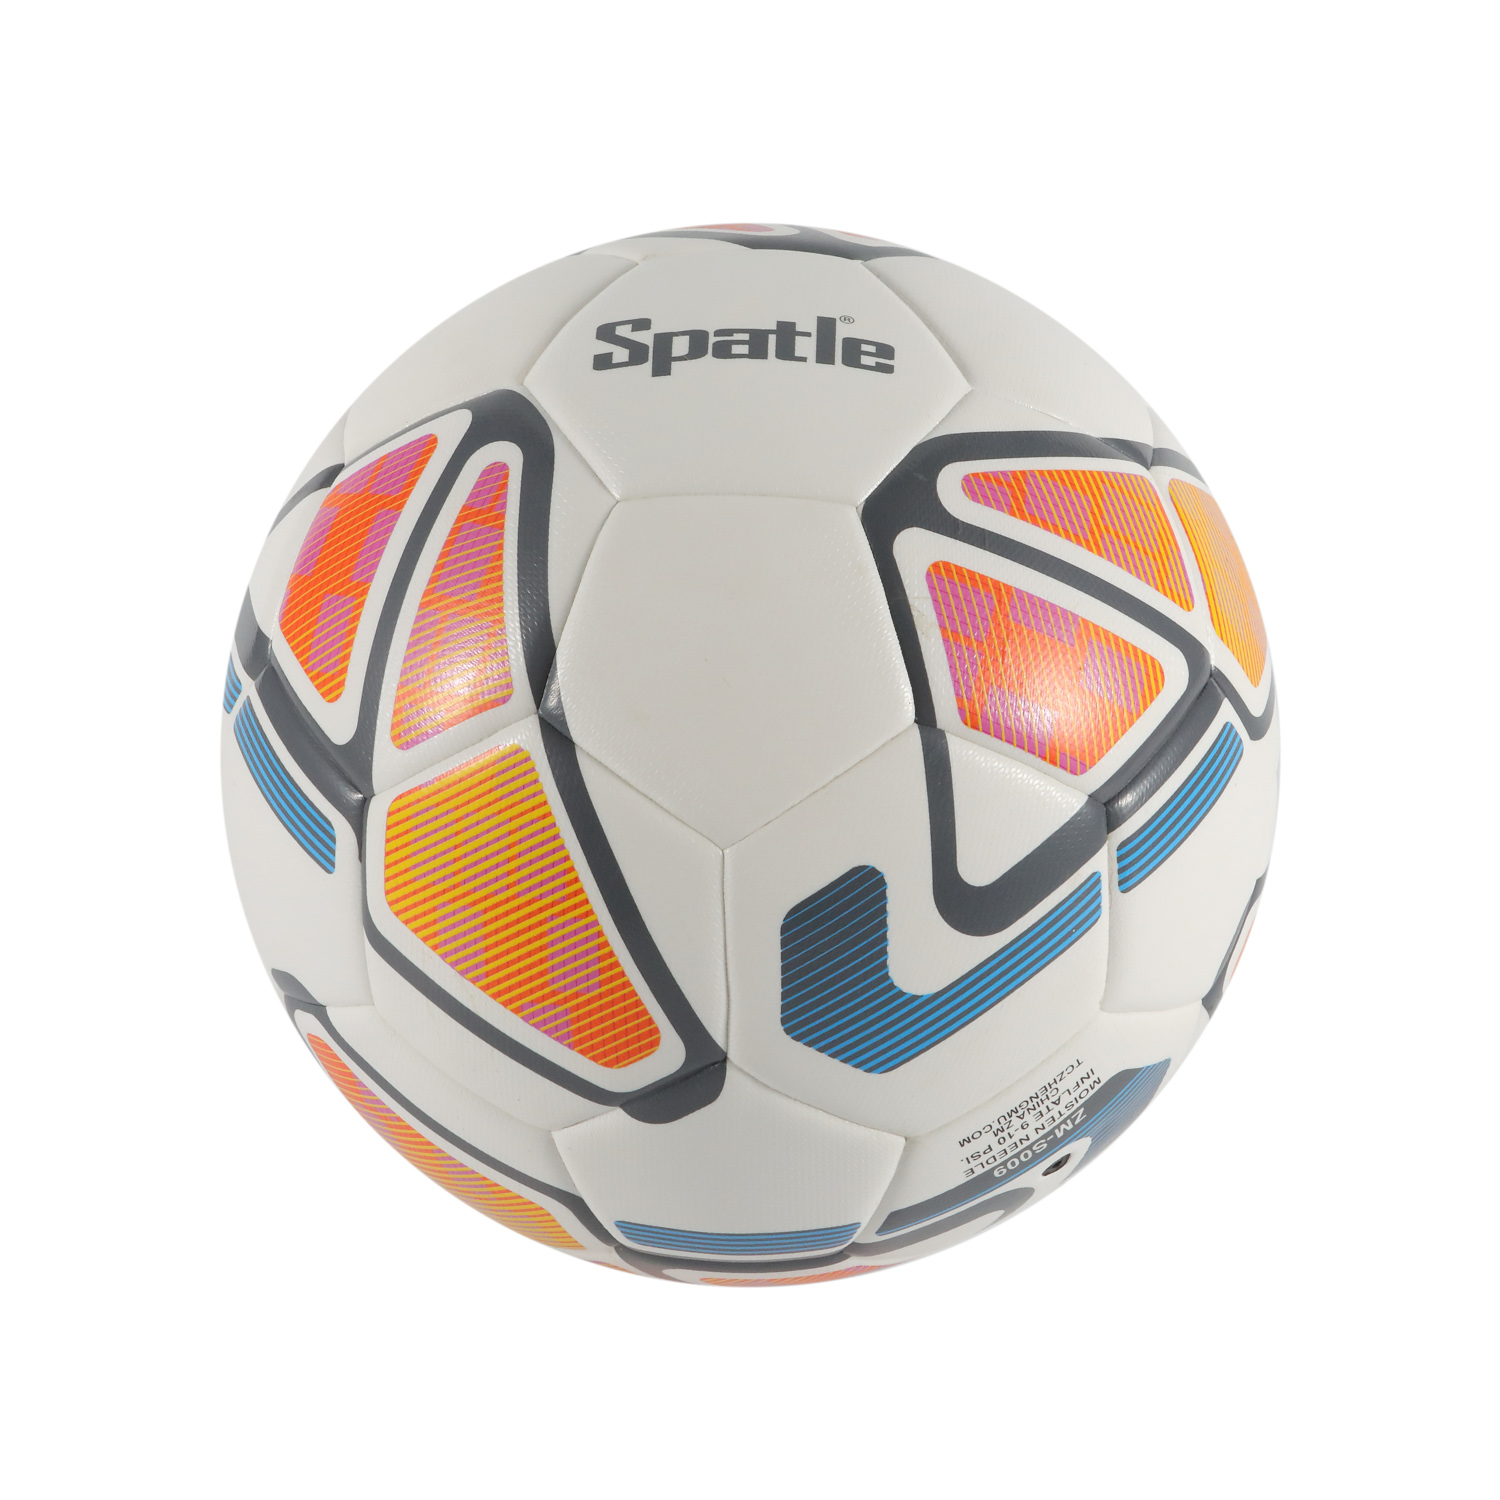 Werbegeschenk Maschinell genähte Fußball-/Fußballbälle mit individuellem Logo